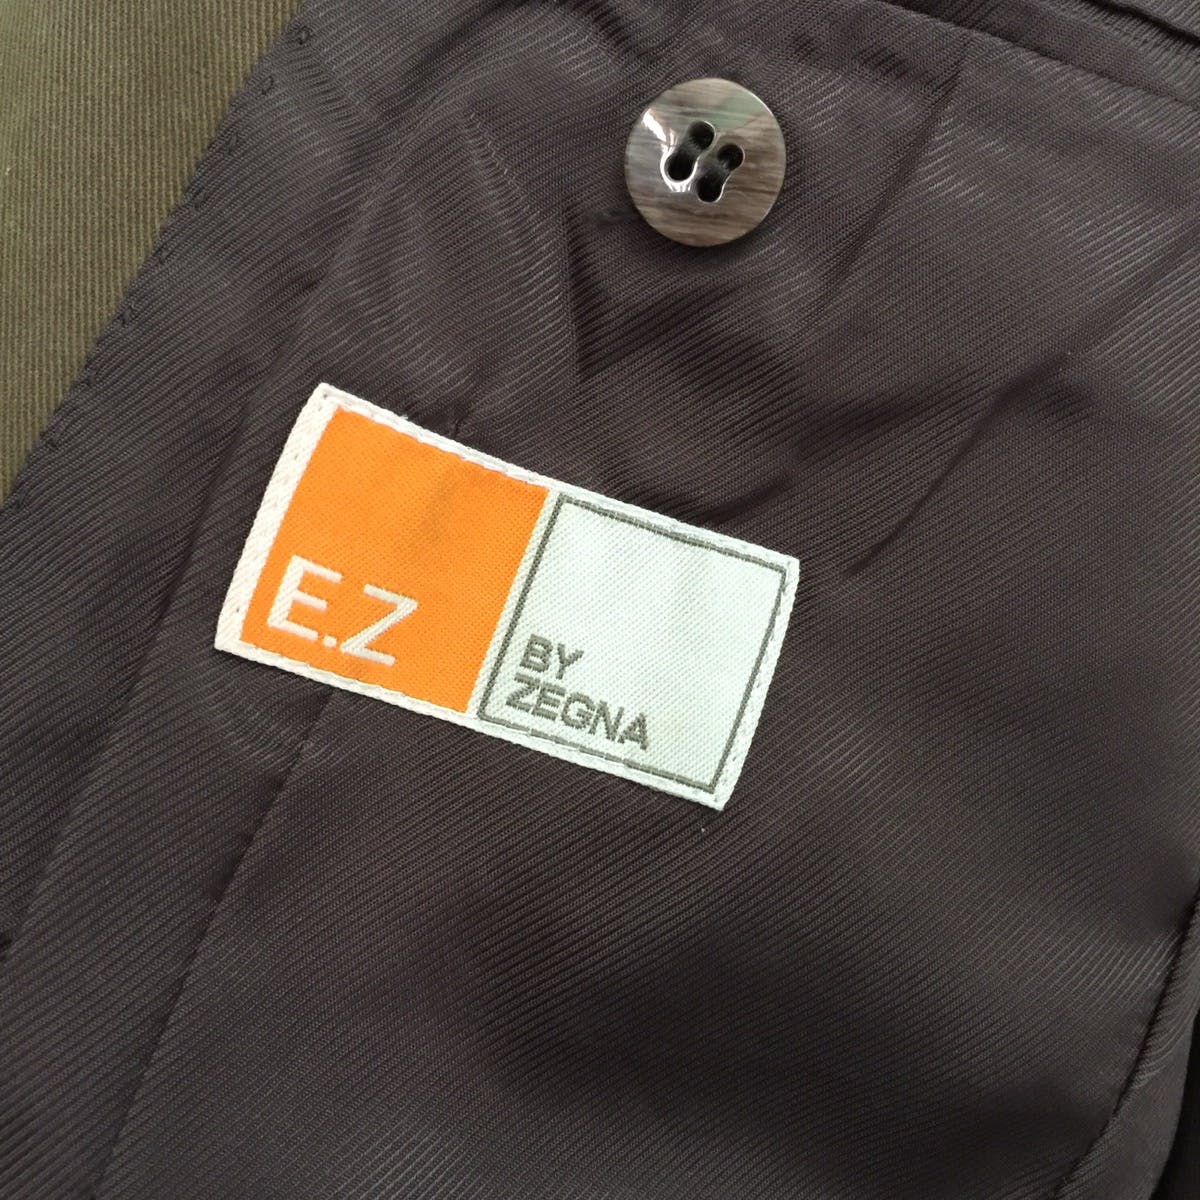 EZ by Zegna blazer jacket made in Japan - 11